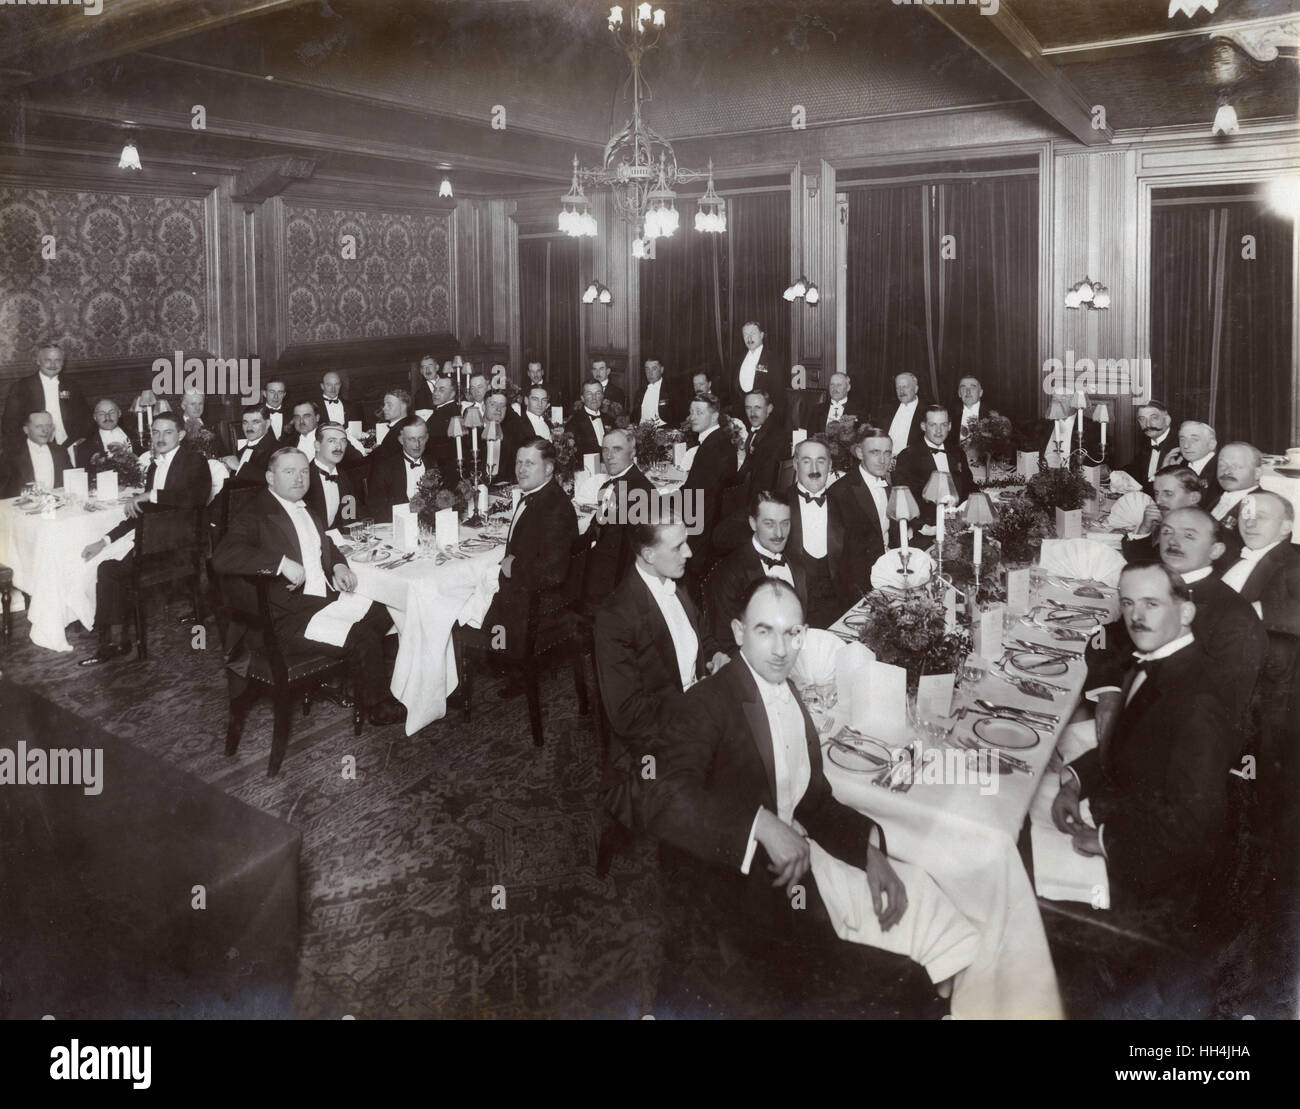 Cena de la Reunión Anual de los Ingenieros Reales, 1925 Foto de stock